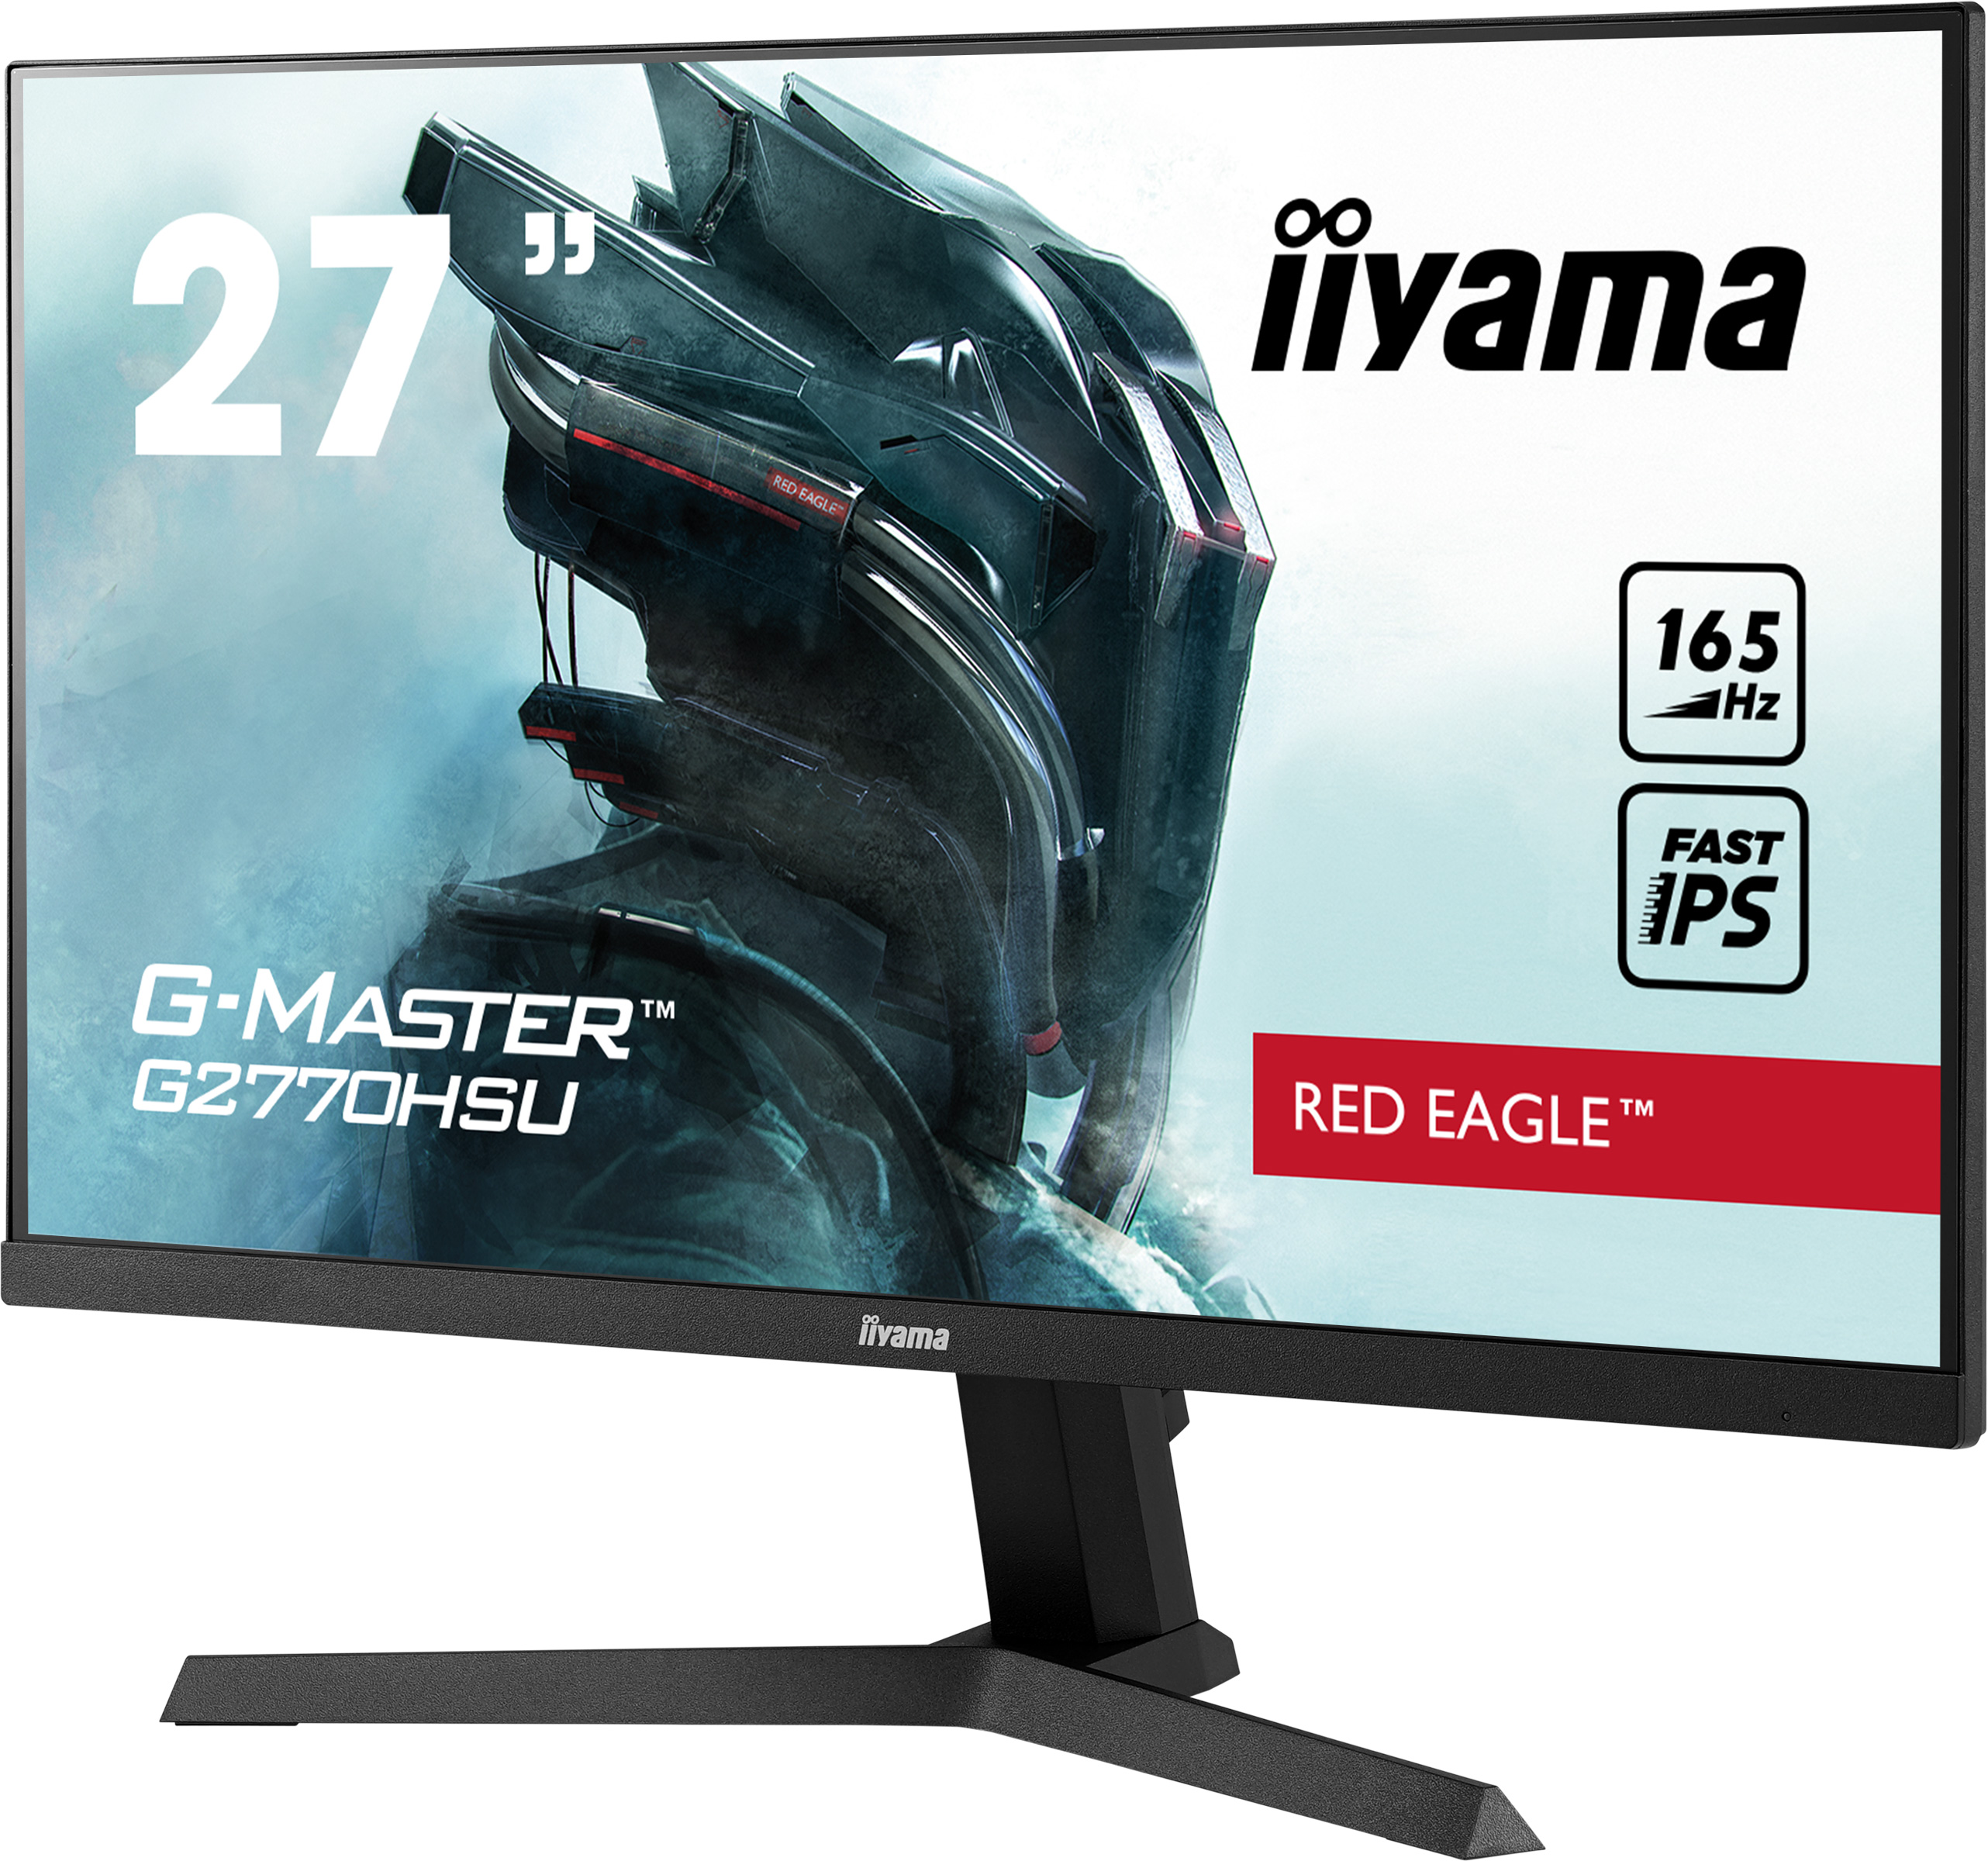 Iiyama G-MASTER G2770HSU-B1 RED EAGLE | 27" | 1920 x 1080 @165Hz (2.1 megapixel Full HD, DisplayPort) | Gaming Monitor